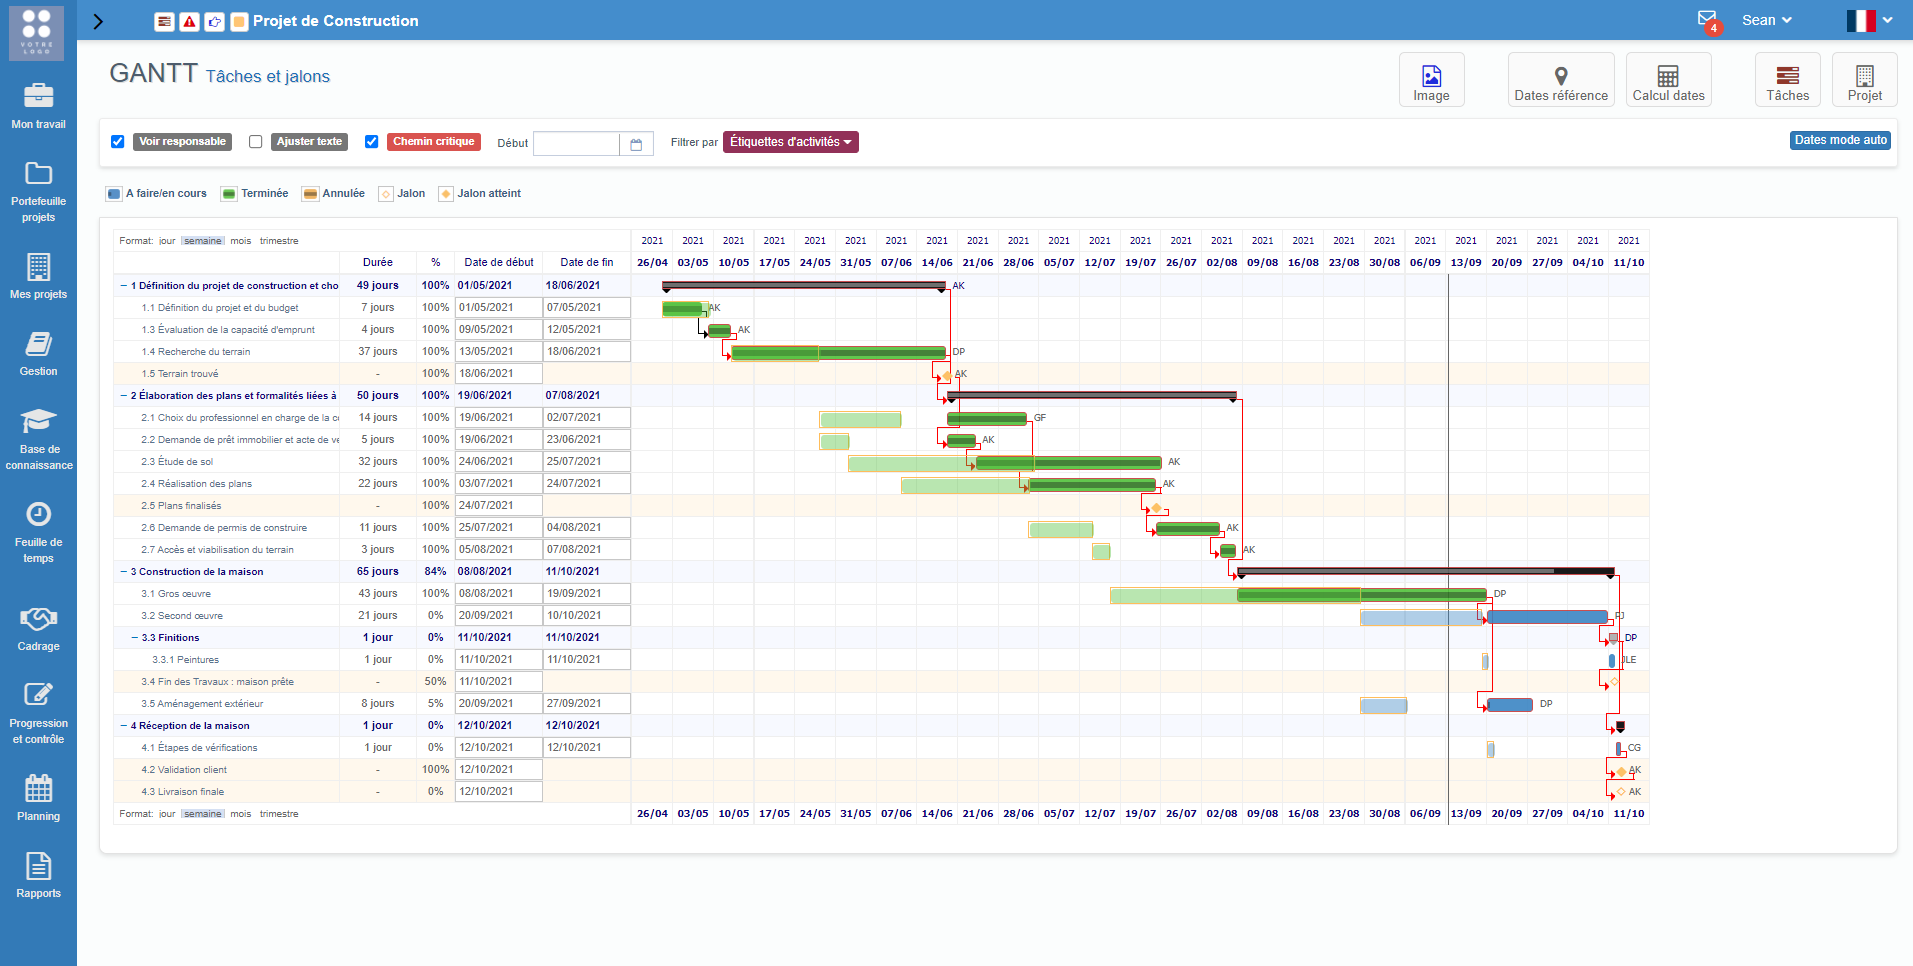 Gouti - Visualisez le GANTT de votre projet et exportez-le en format image. Vous pouvez décaler les dates et accéder aux détails des tâches depuis le GANTT. Les Dates de références vous montre les décalages entre le planning prévisionnel et le réel.